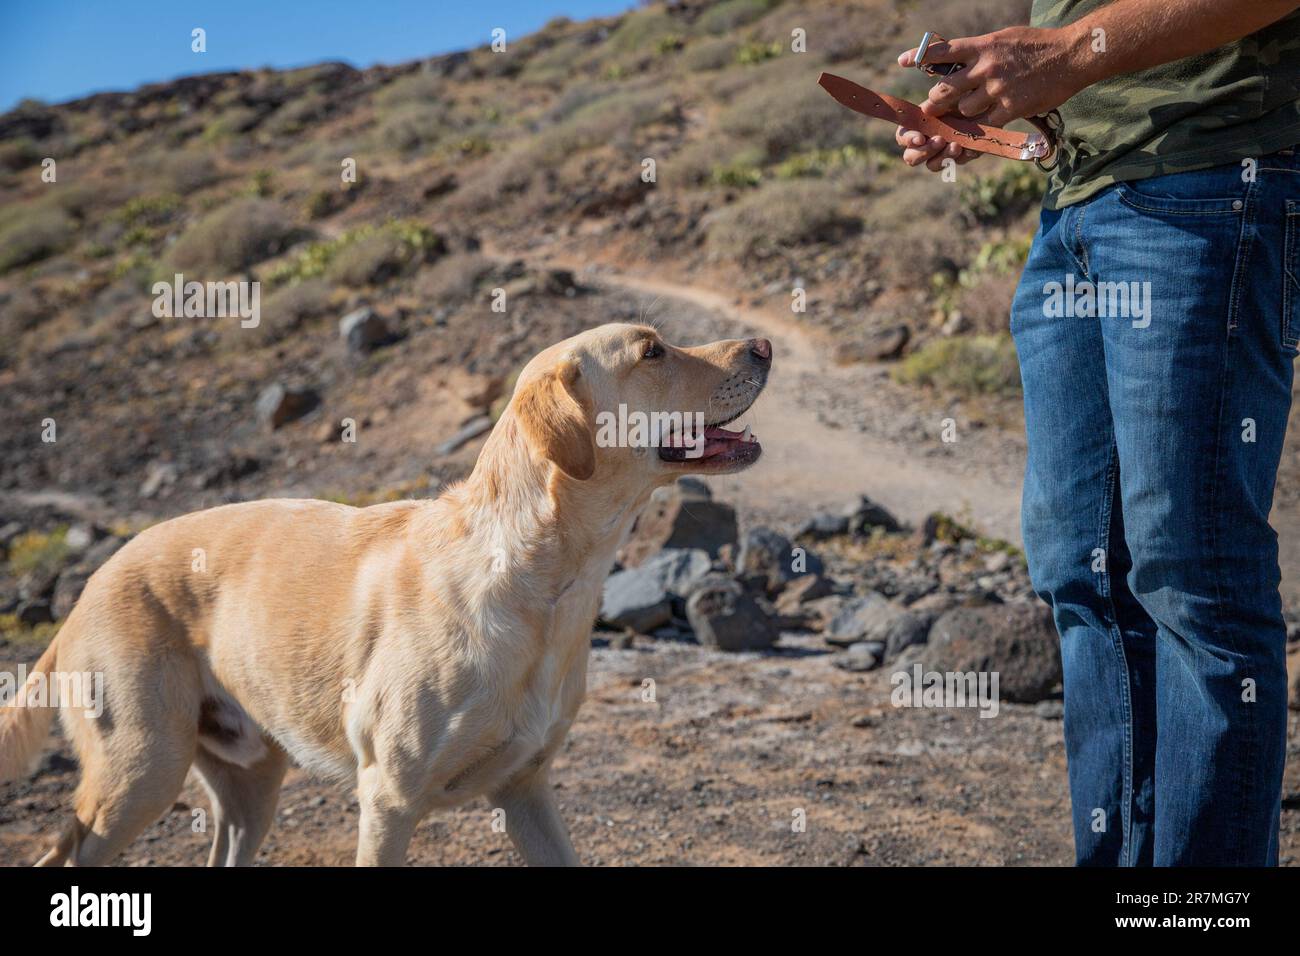 Un entraîneur canin est sur le point de mettre le collier sur un chien qu'il s'entraîne Banque D'Images